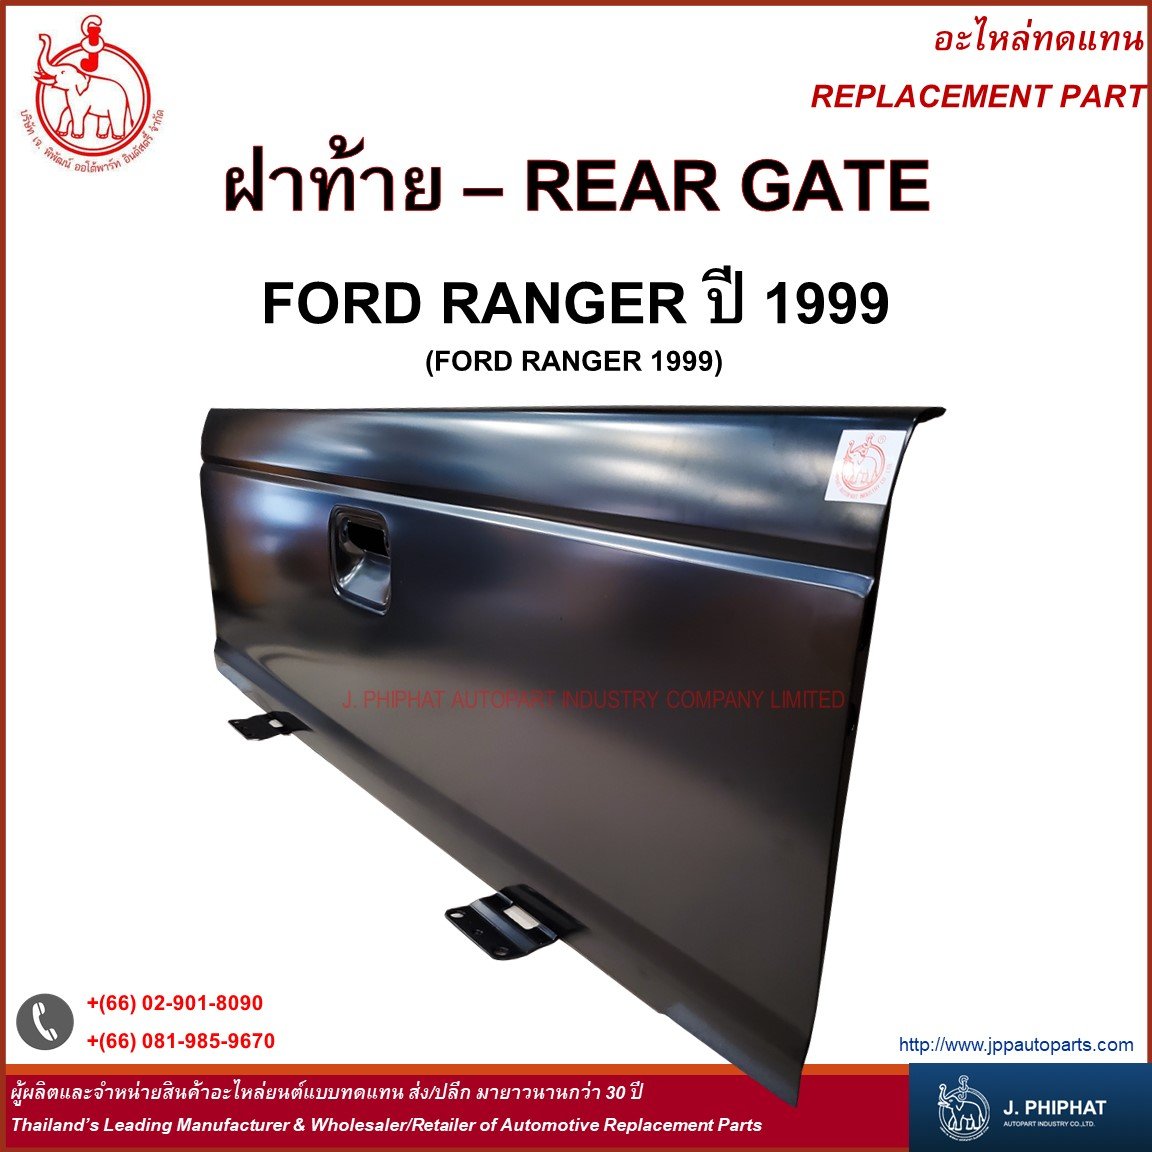 REAR GATE for FORD RANGER '99